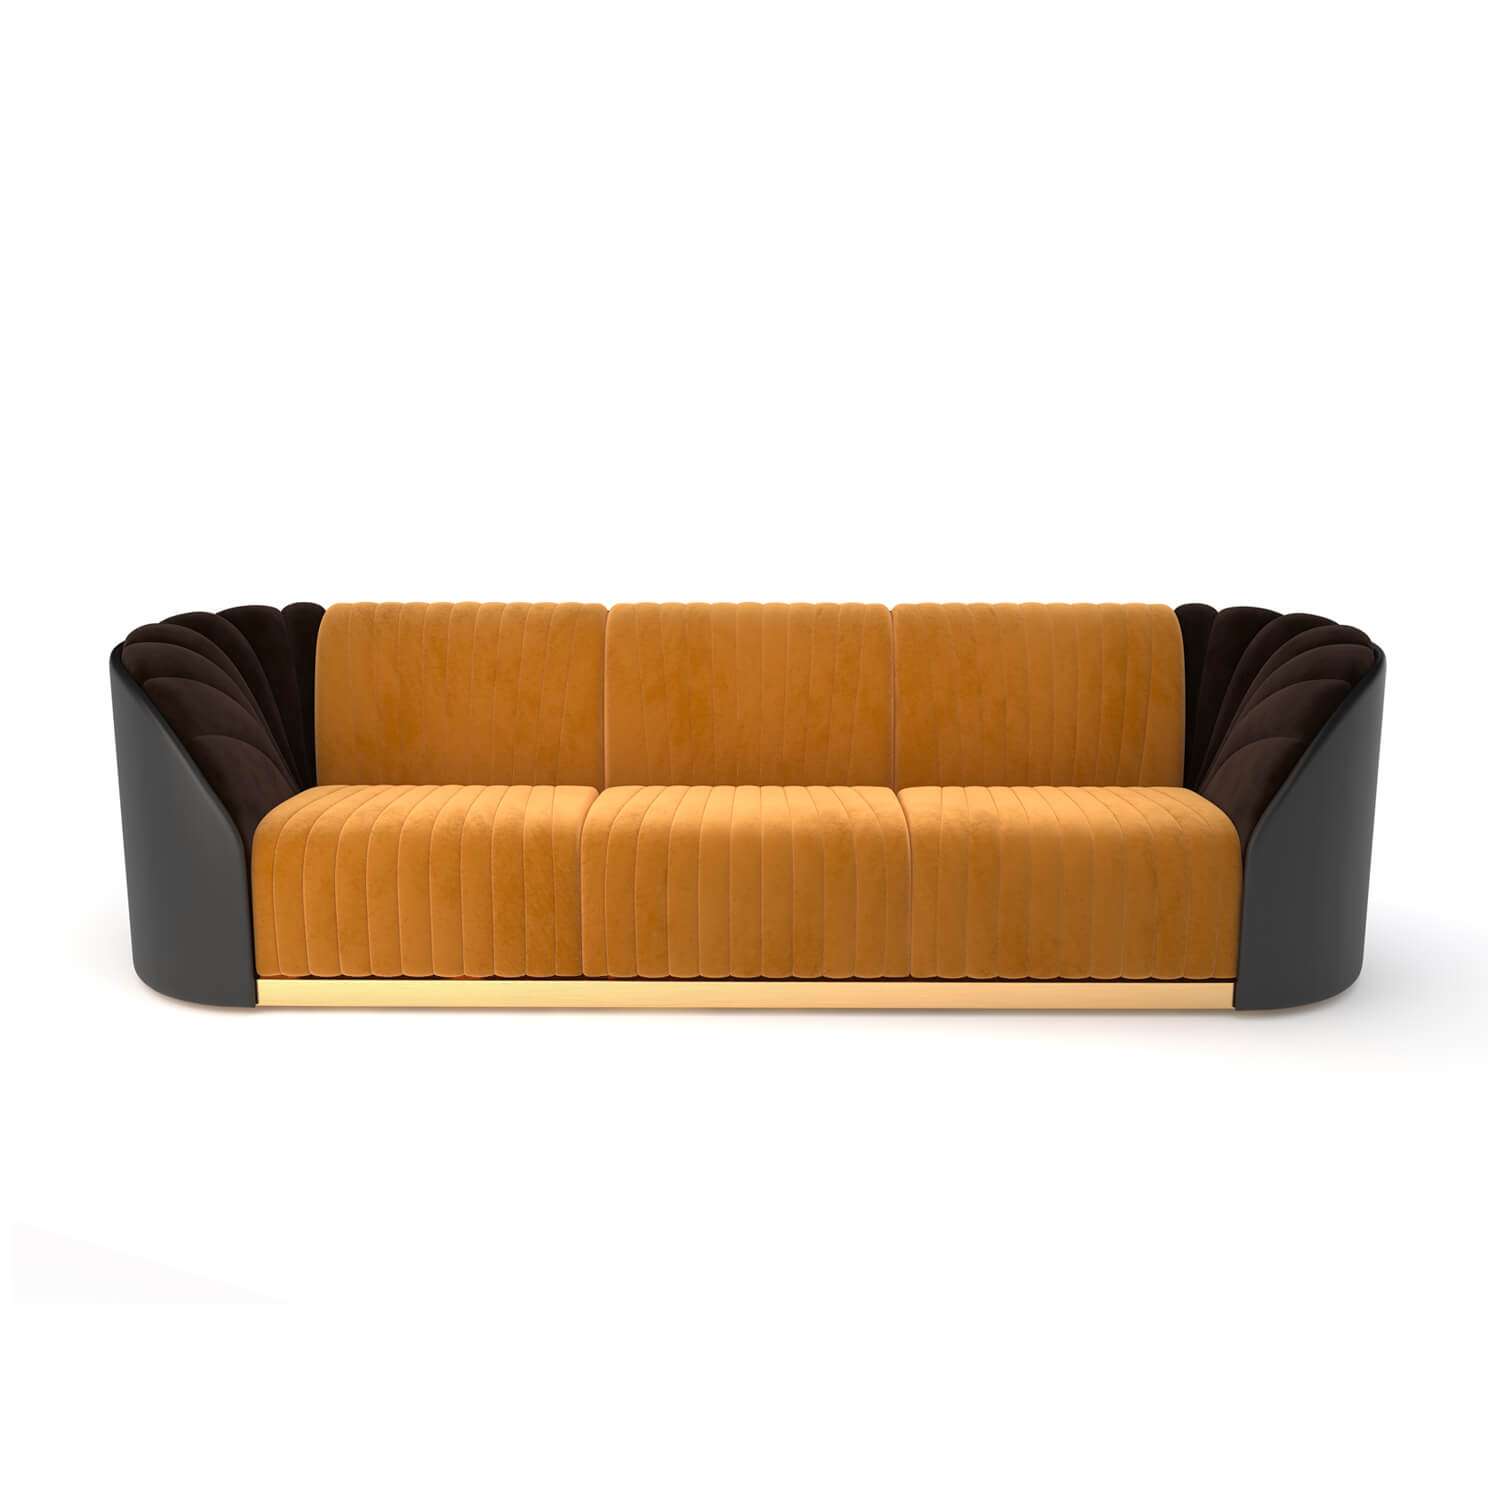 VEDRANO 3-Seater Sofa by Marano Furniture